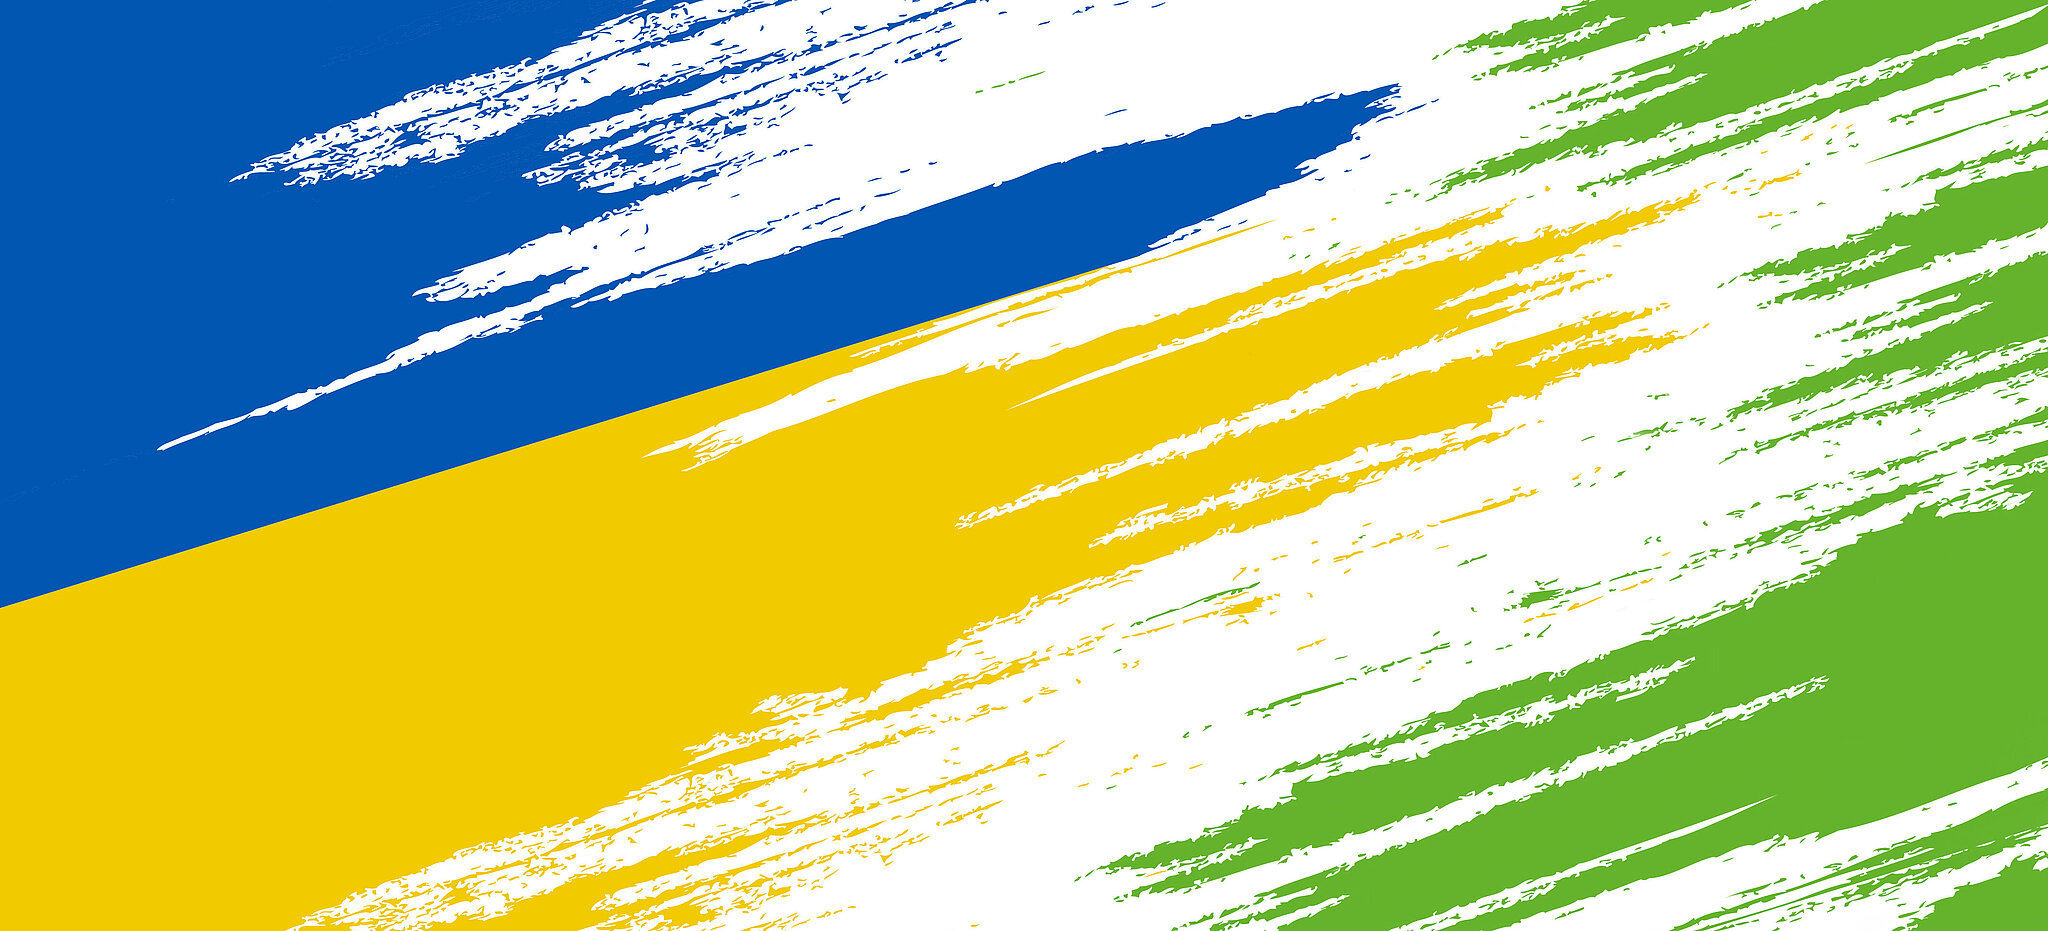 Ukrainische Flaggenfarben (blau und gelb) gehen in das Grün von persona service über